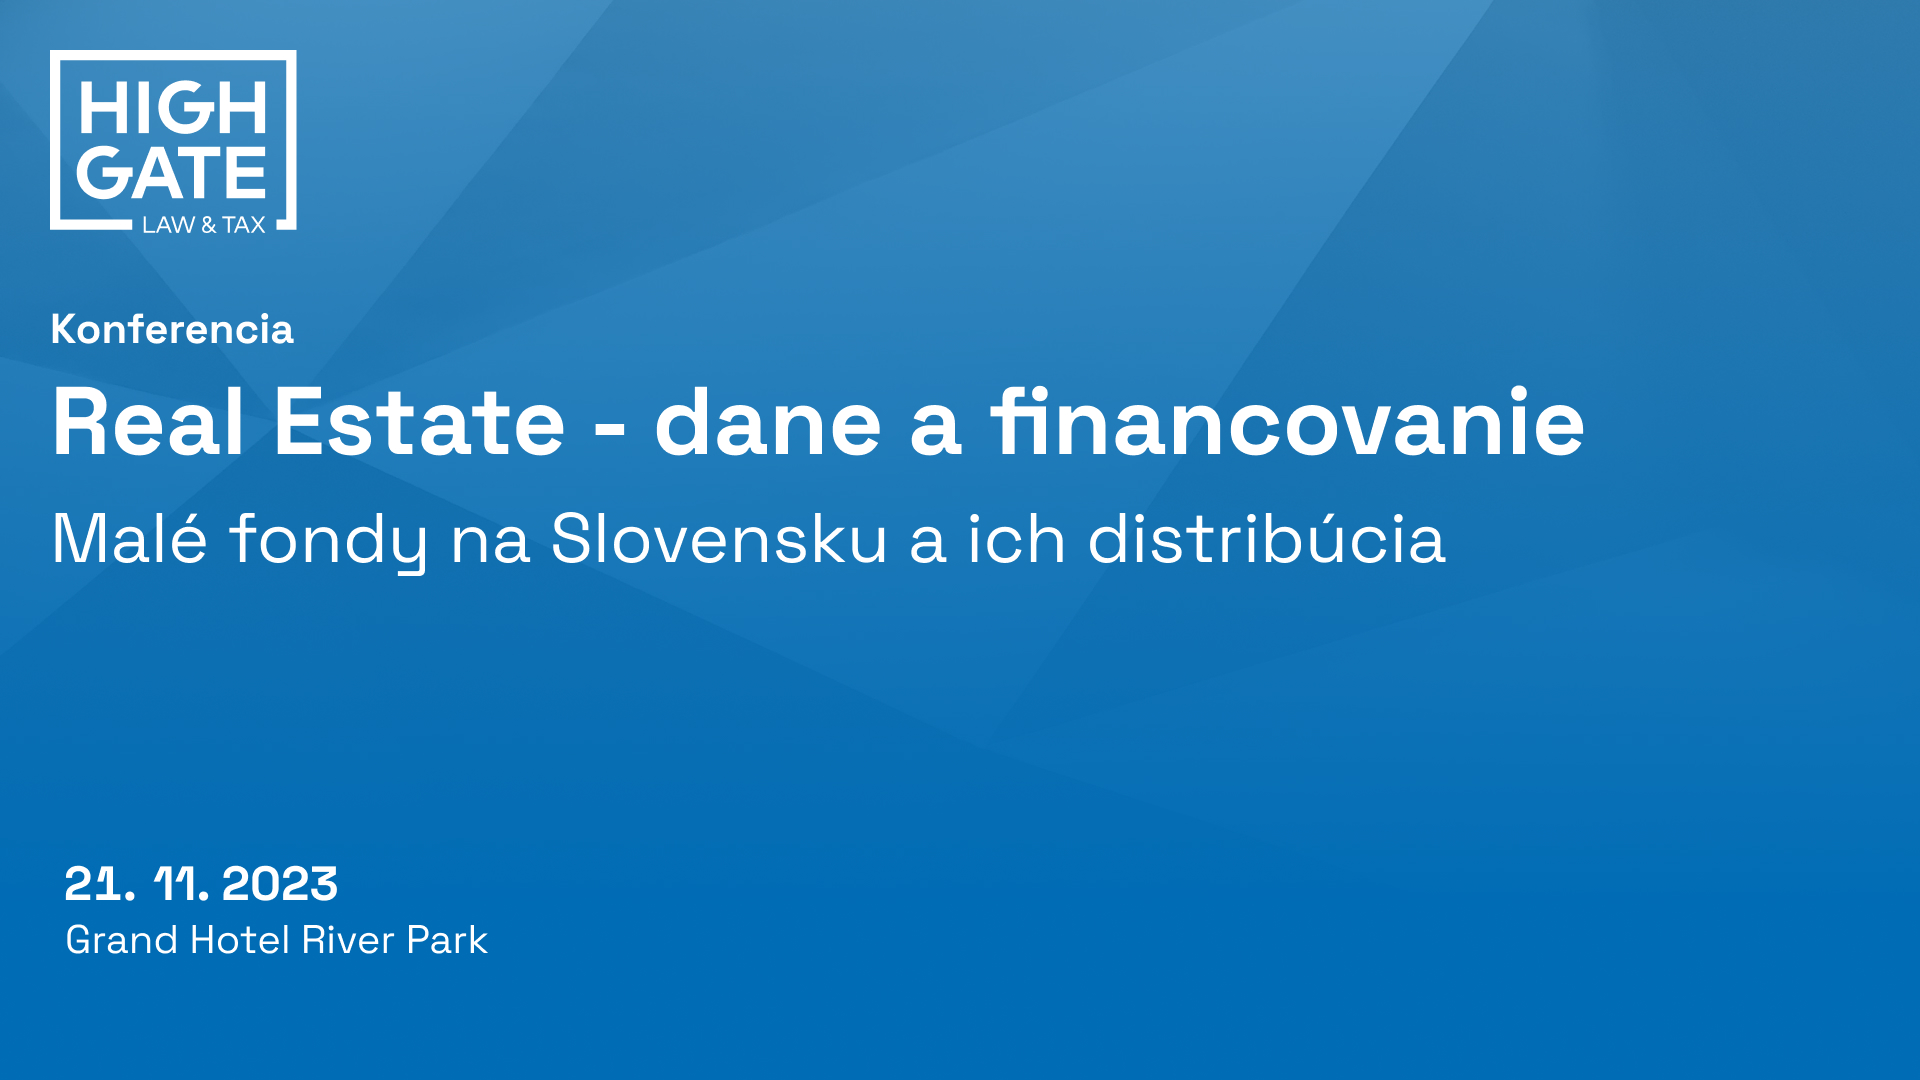 Videozáznam z konferencie Real Estate - dane a financovanie. Panel:  Malé fondy na Slovensku a ich distribúcia